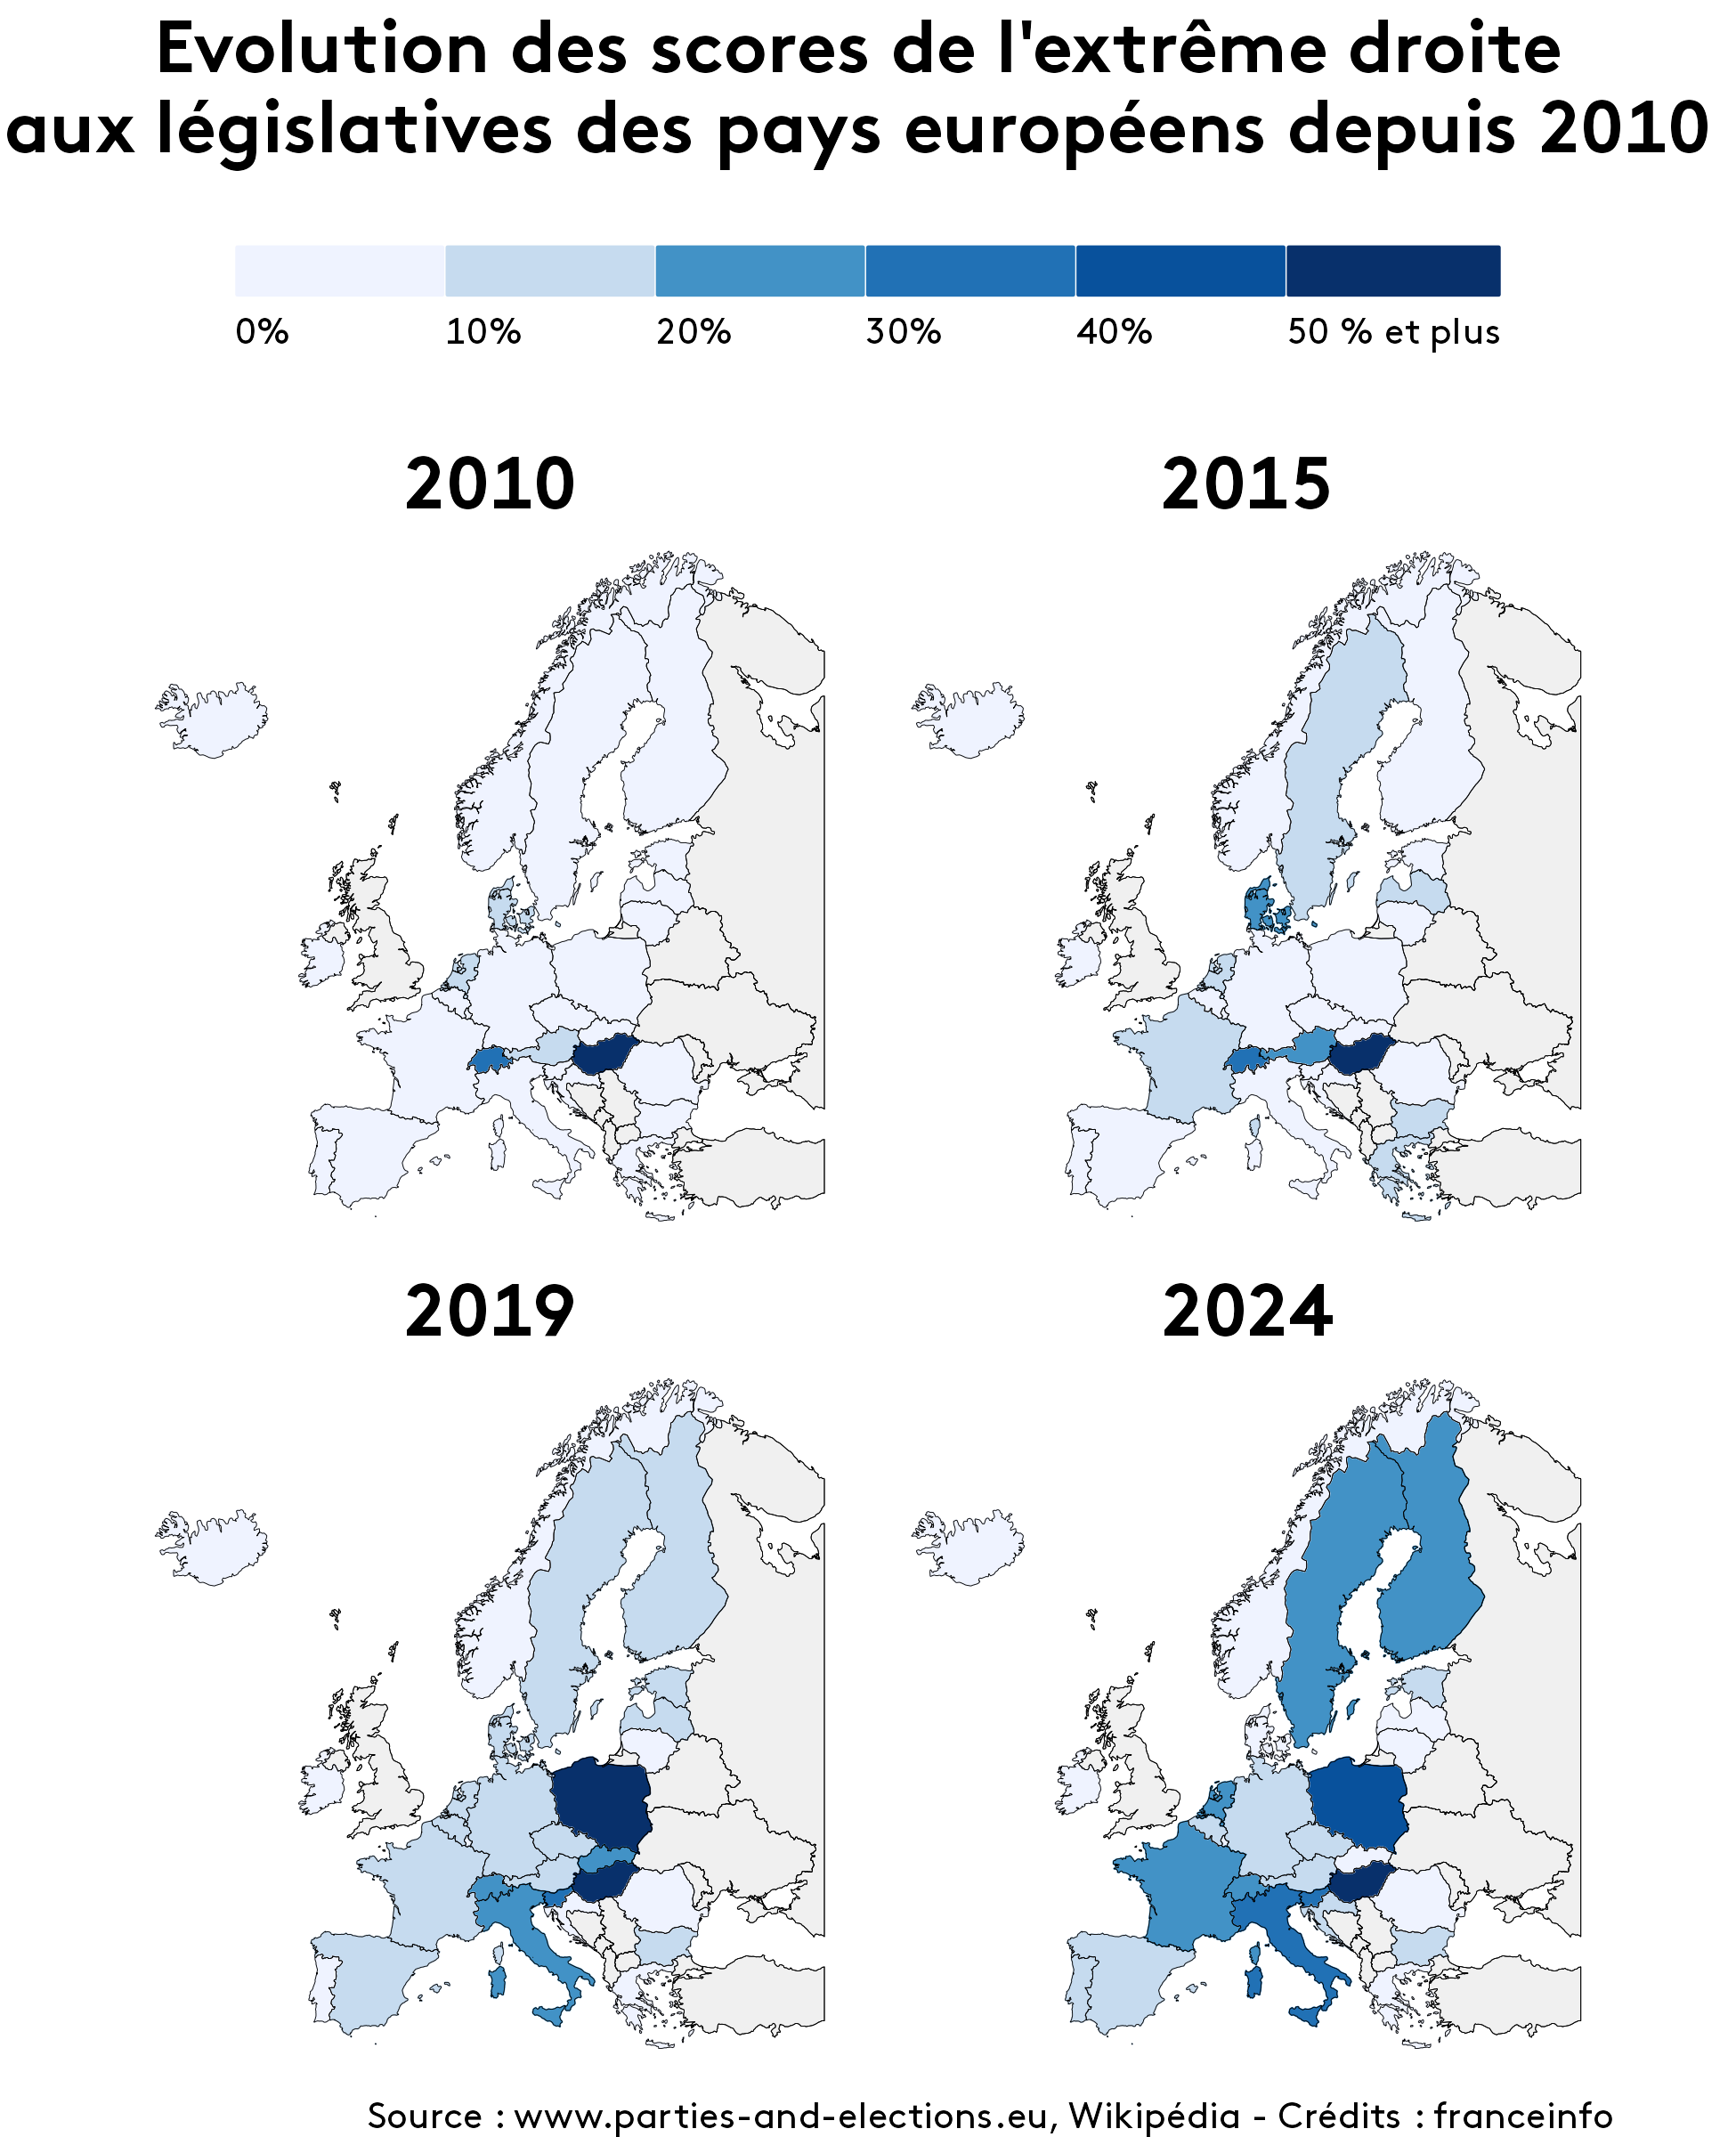 Evolution des scores de l'extrême droite aux législatives des pays européens depuis 2010